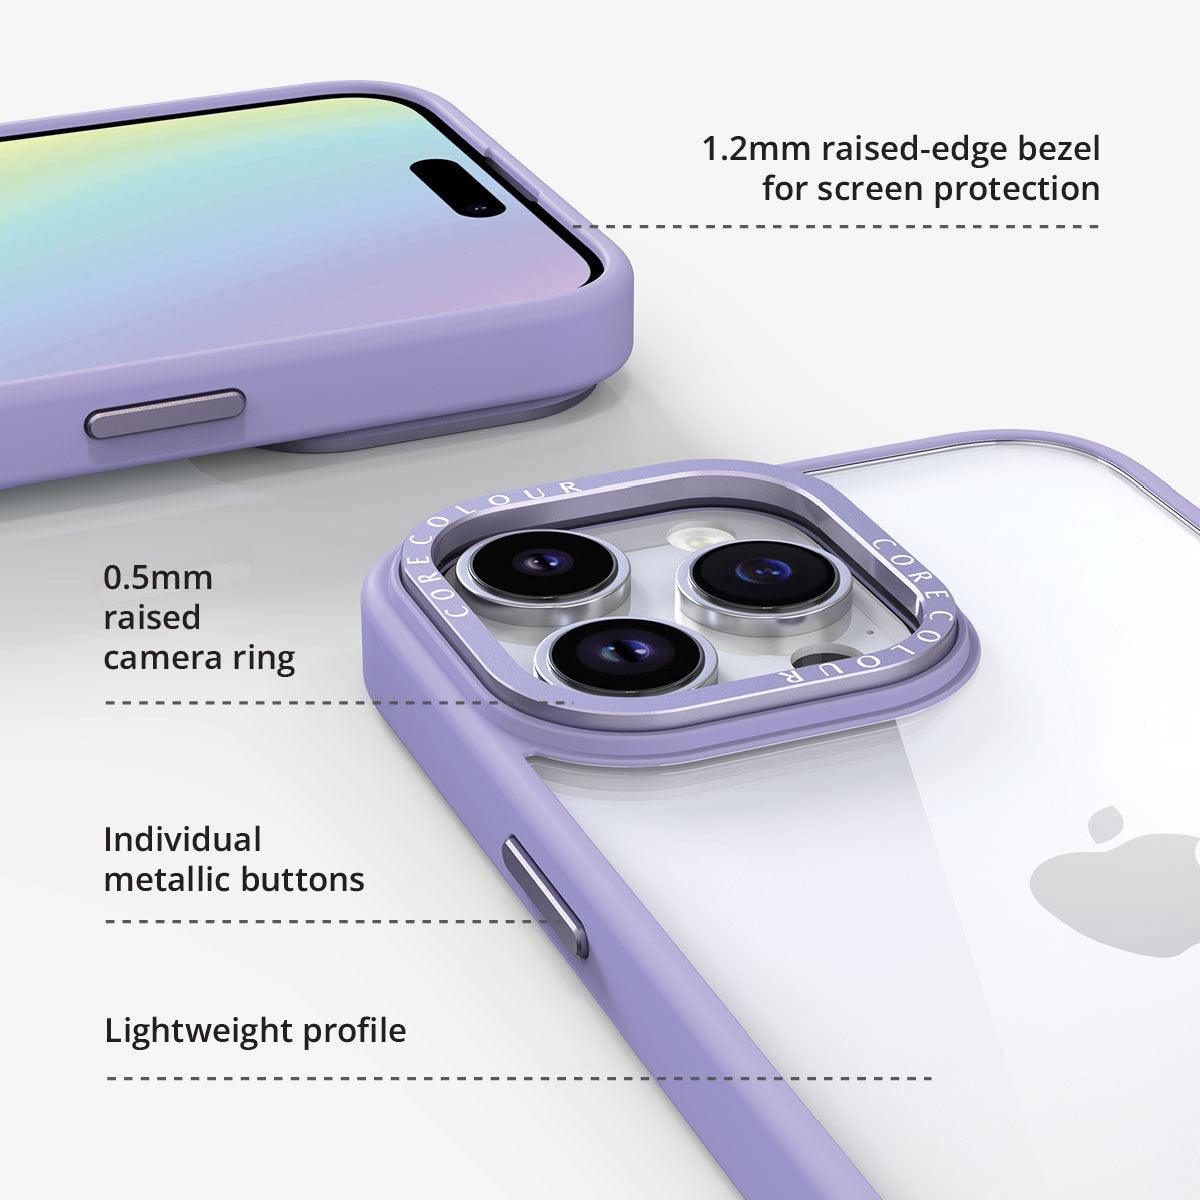 iPhone 8 Pink Lemonade Clear Phone Case - CORECOLOUR